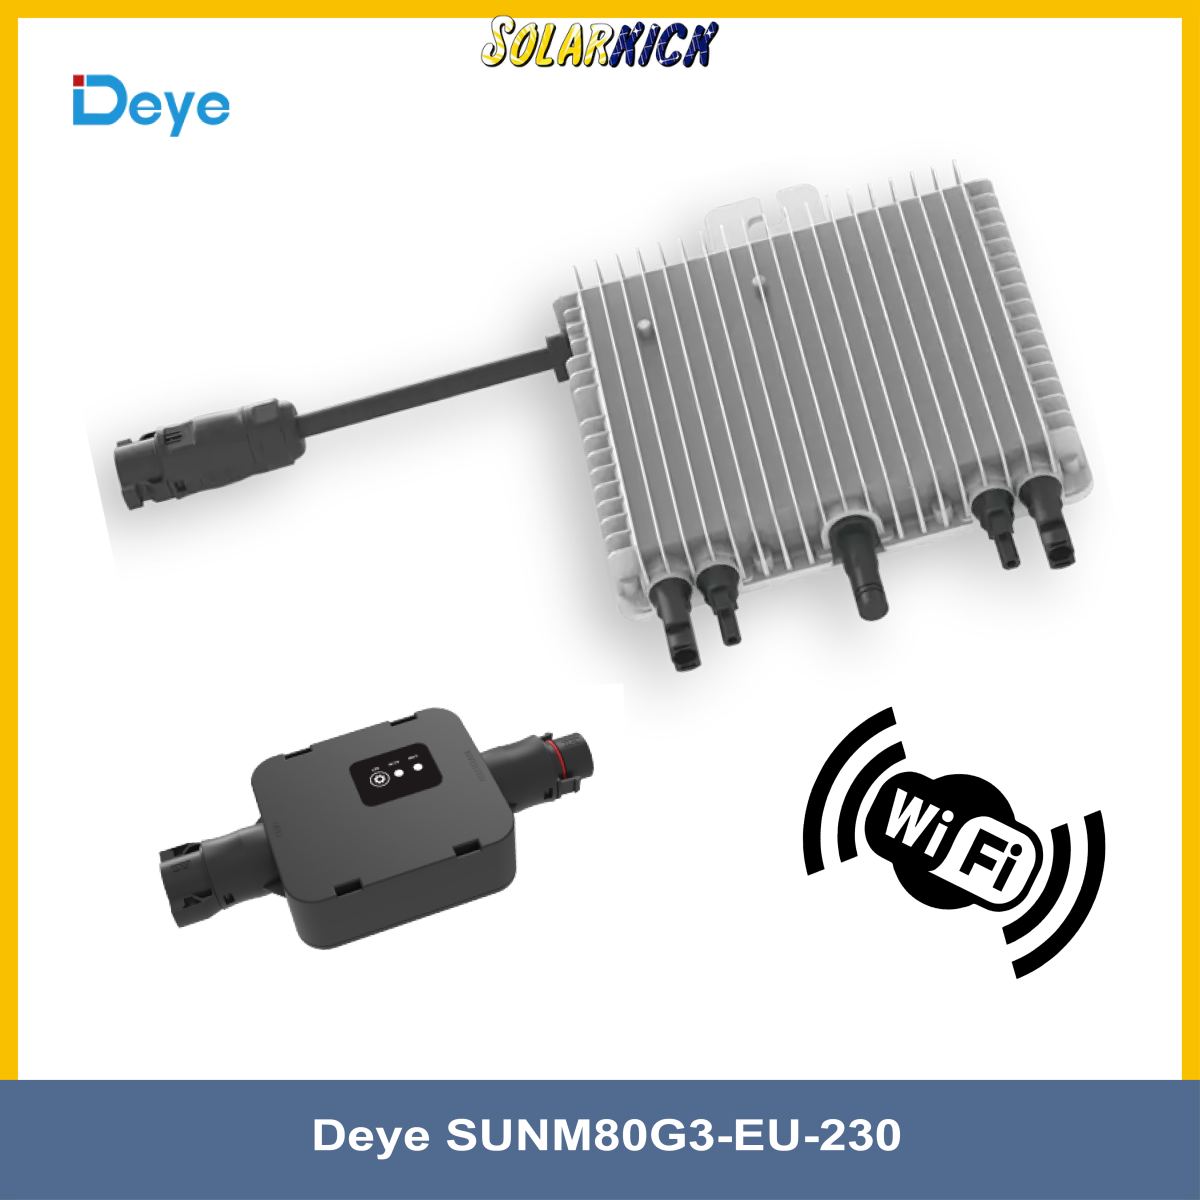 Microwechselrichter Deye SUN600G3-EU-230, 169,00 €